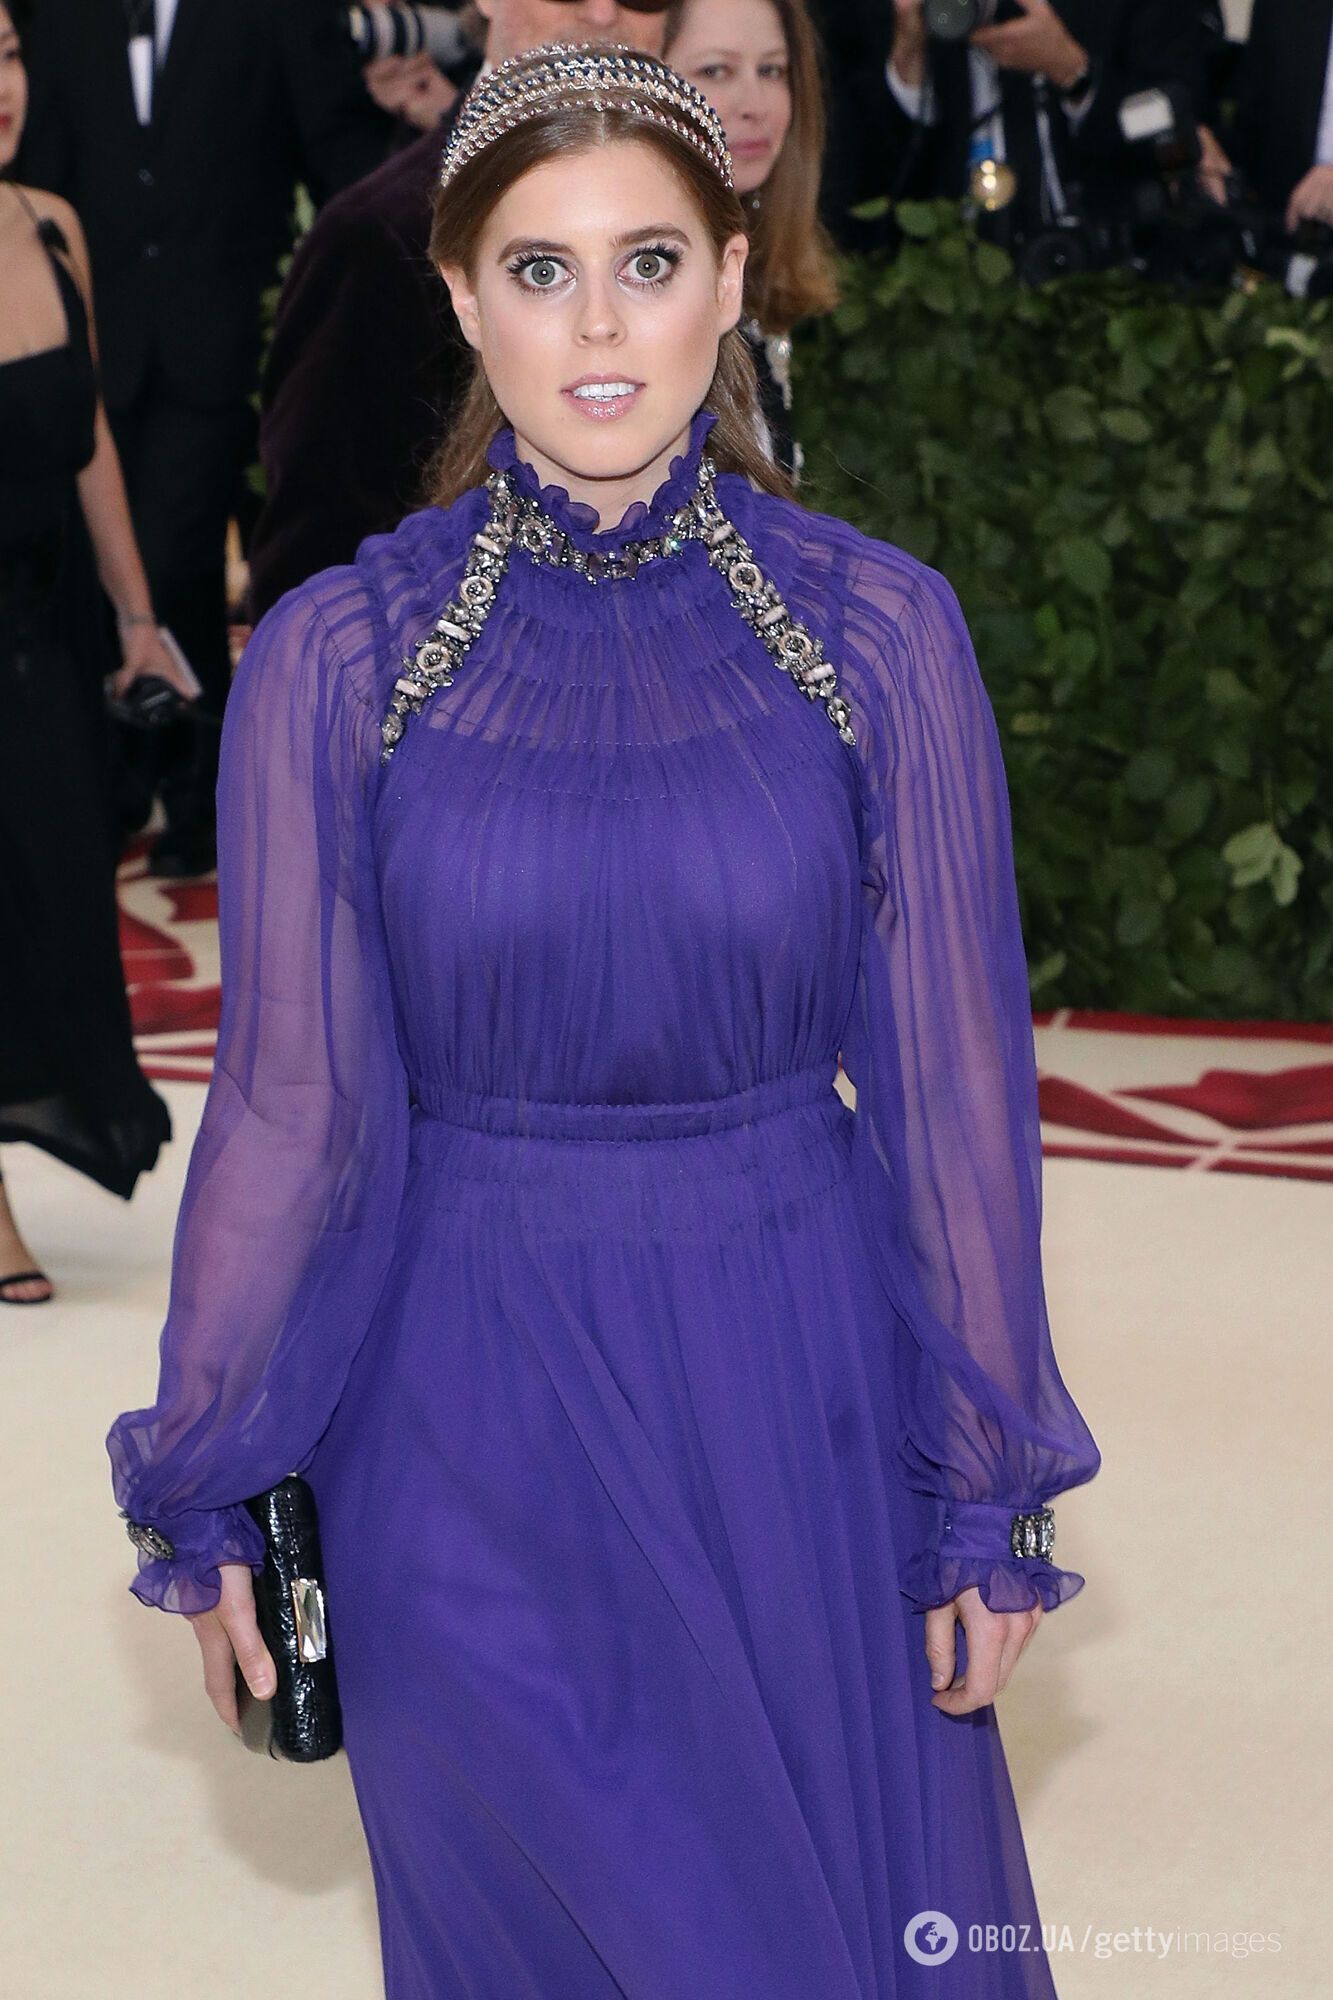 Принцесса Беатрис положила начало модному тренду на Met Gala: после нее эту вещь одевали Кейт Миддлтон и другие королевские особы. Фото